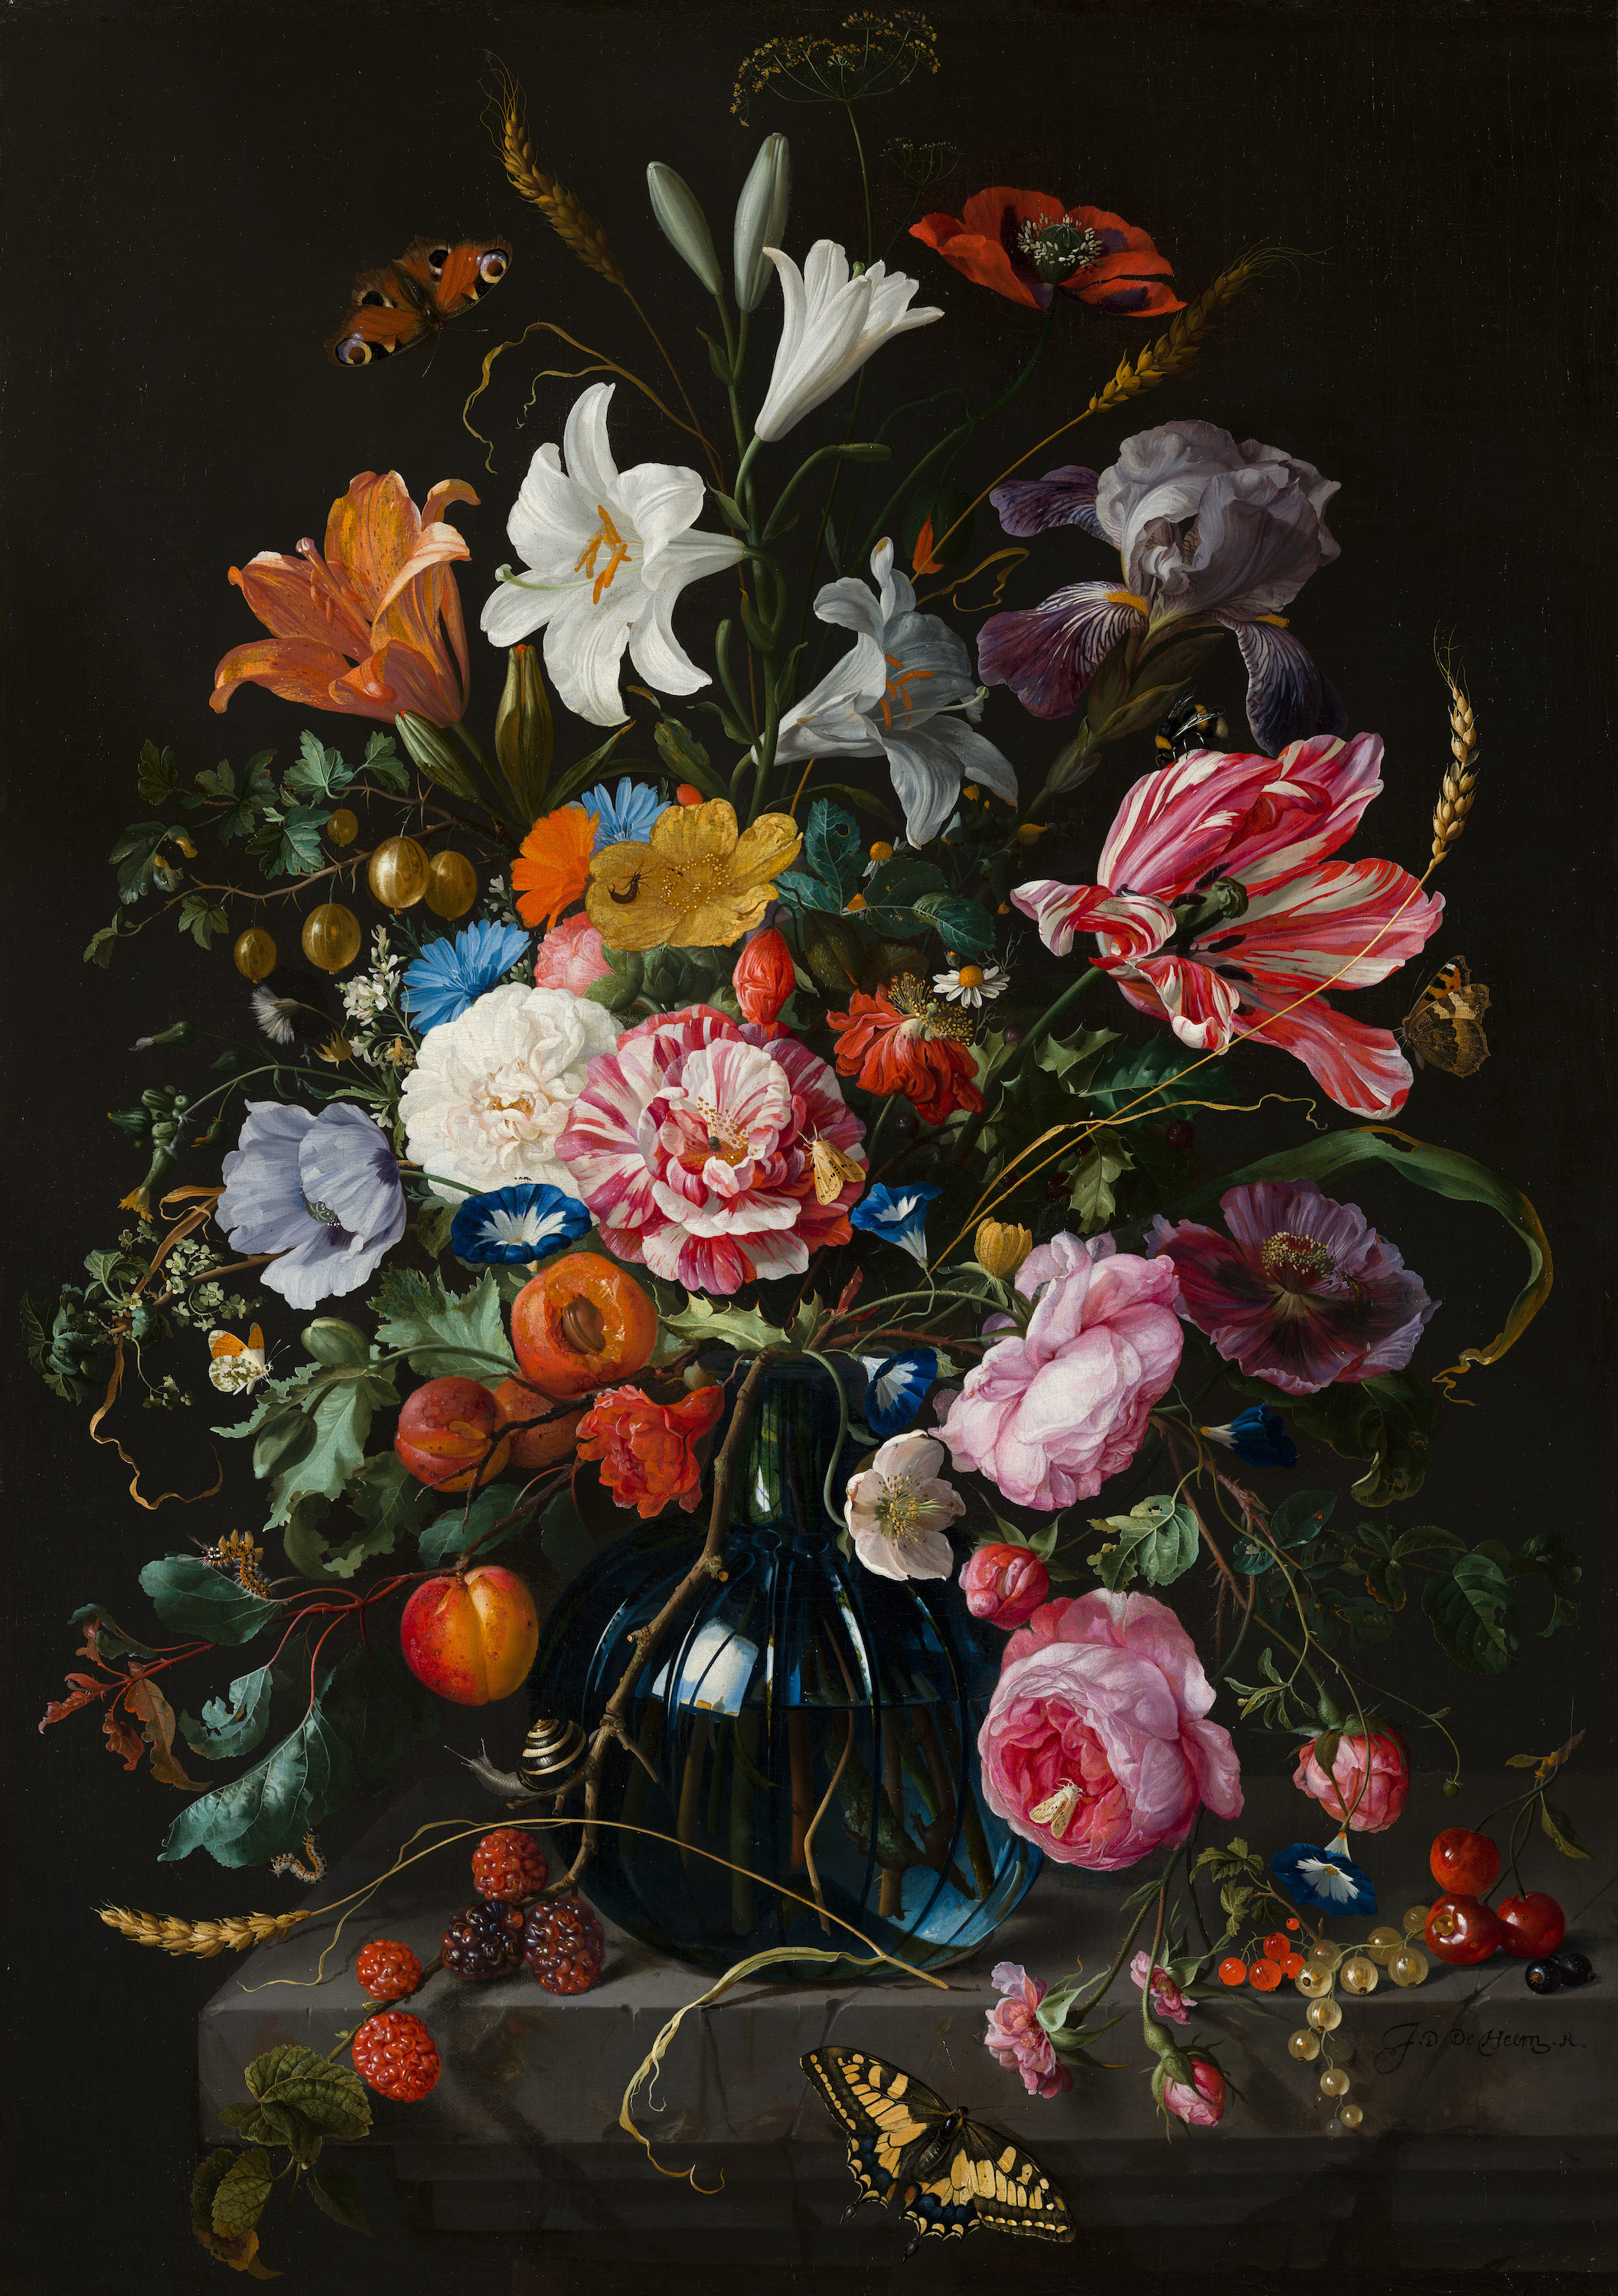 Vase of Flowers by Jan Davidsz de Heem - 1670 - 52.6 x 74.2 cm Mauritshuis, The Hague